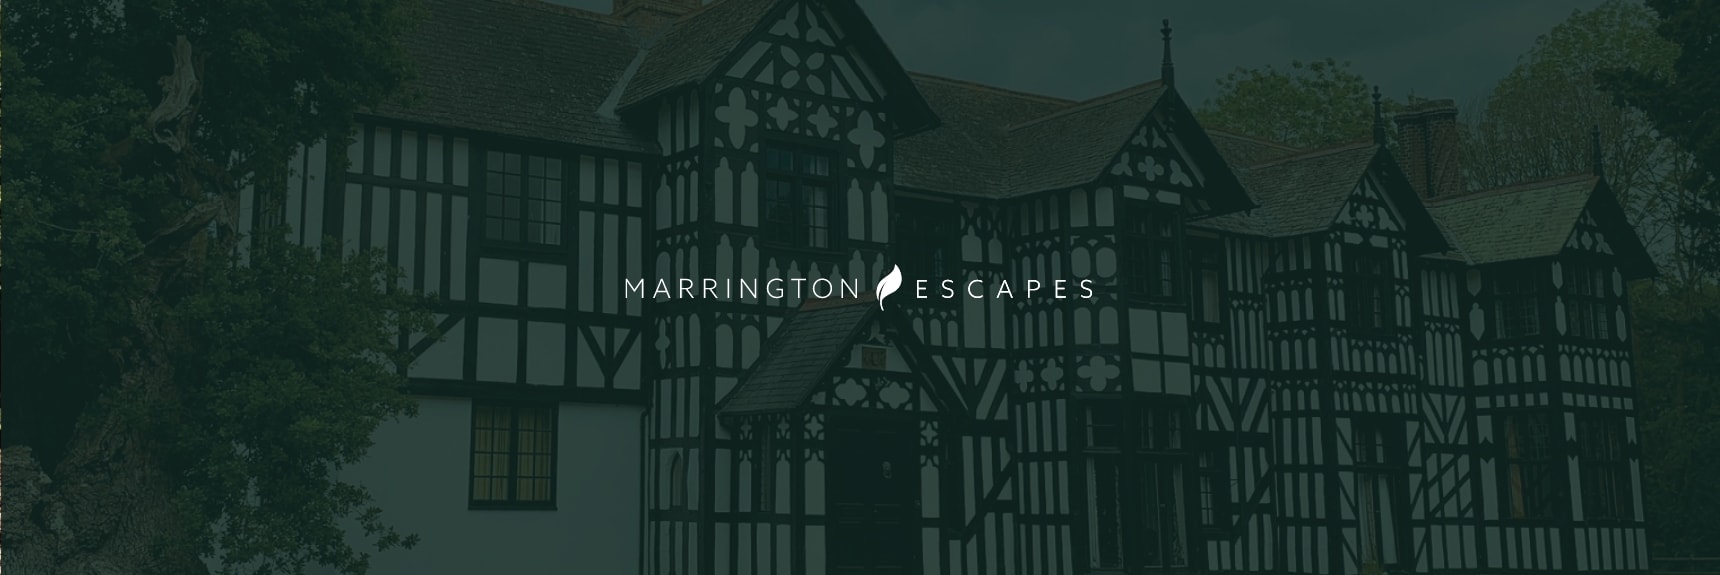 Marrington Escapes